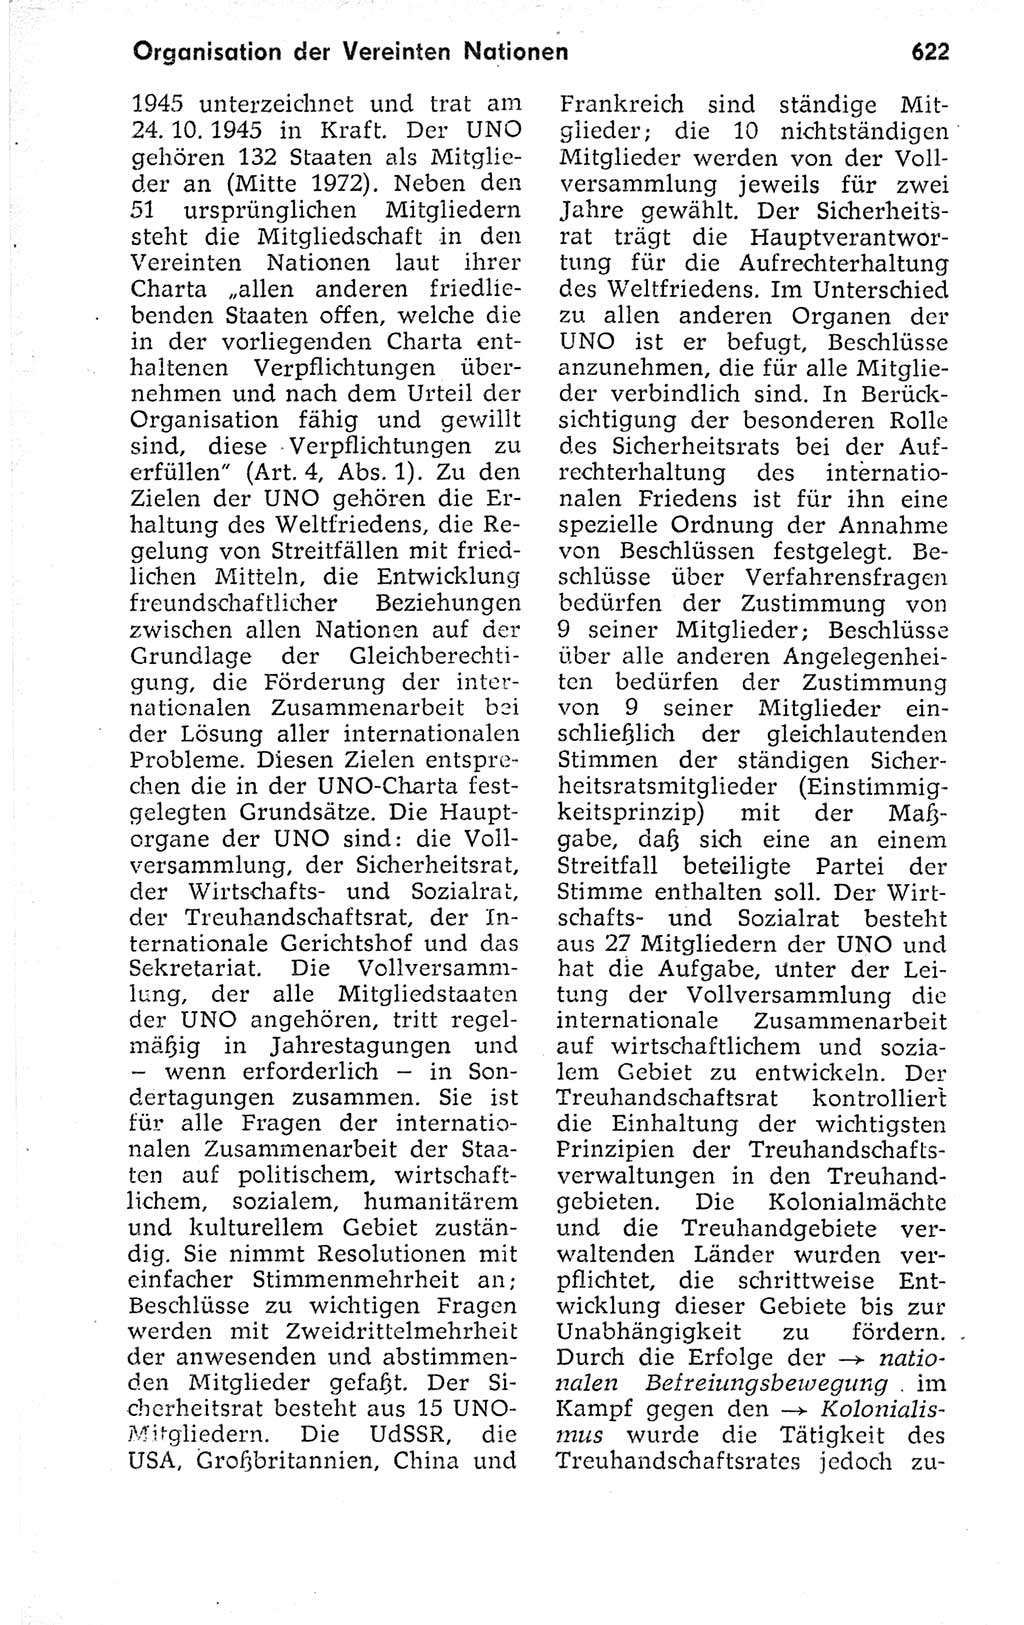 Kleines politisches Wörterbuch [Deutsche Demokratische Republik (DDR)] 1973, Seite 622 (Kl. pol. Wb. DDR 1973, S. 622)